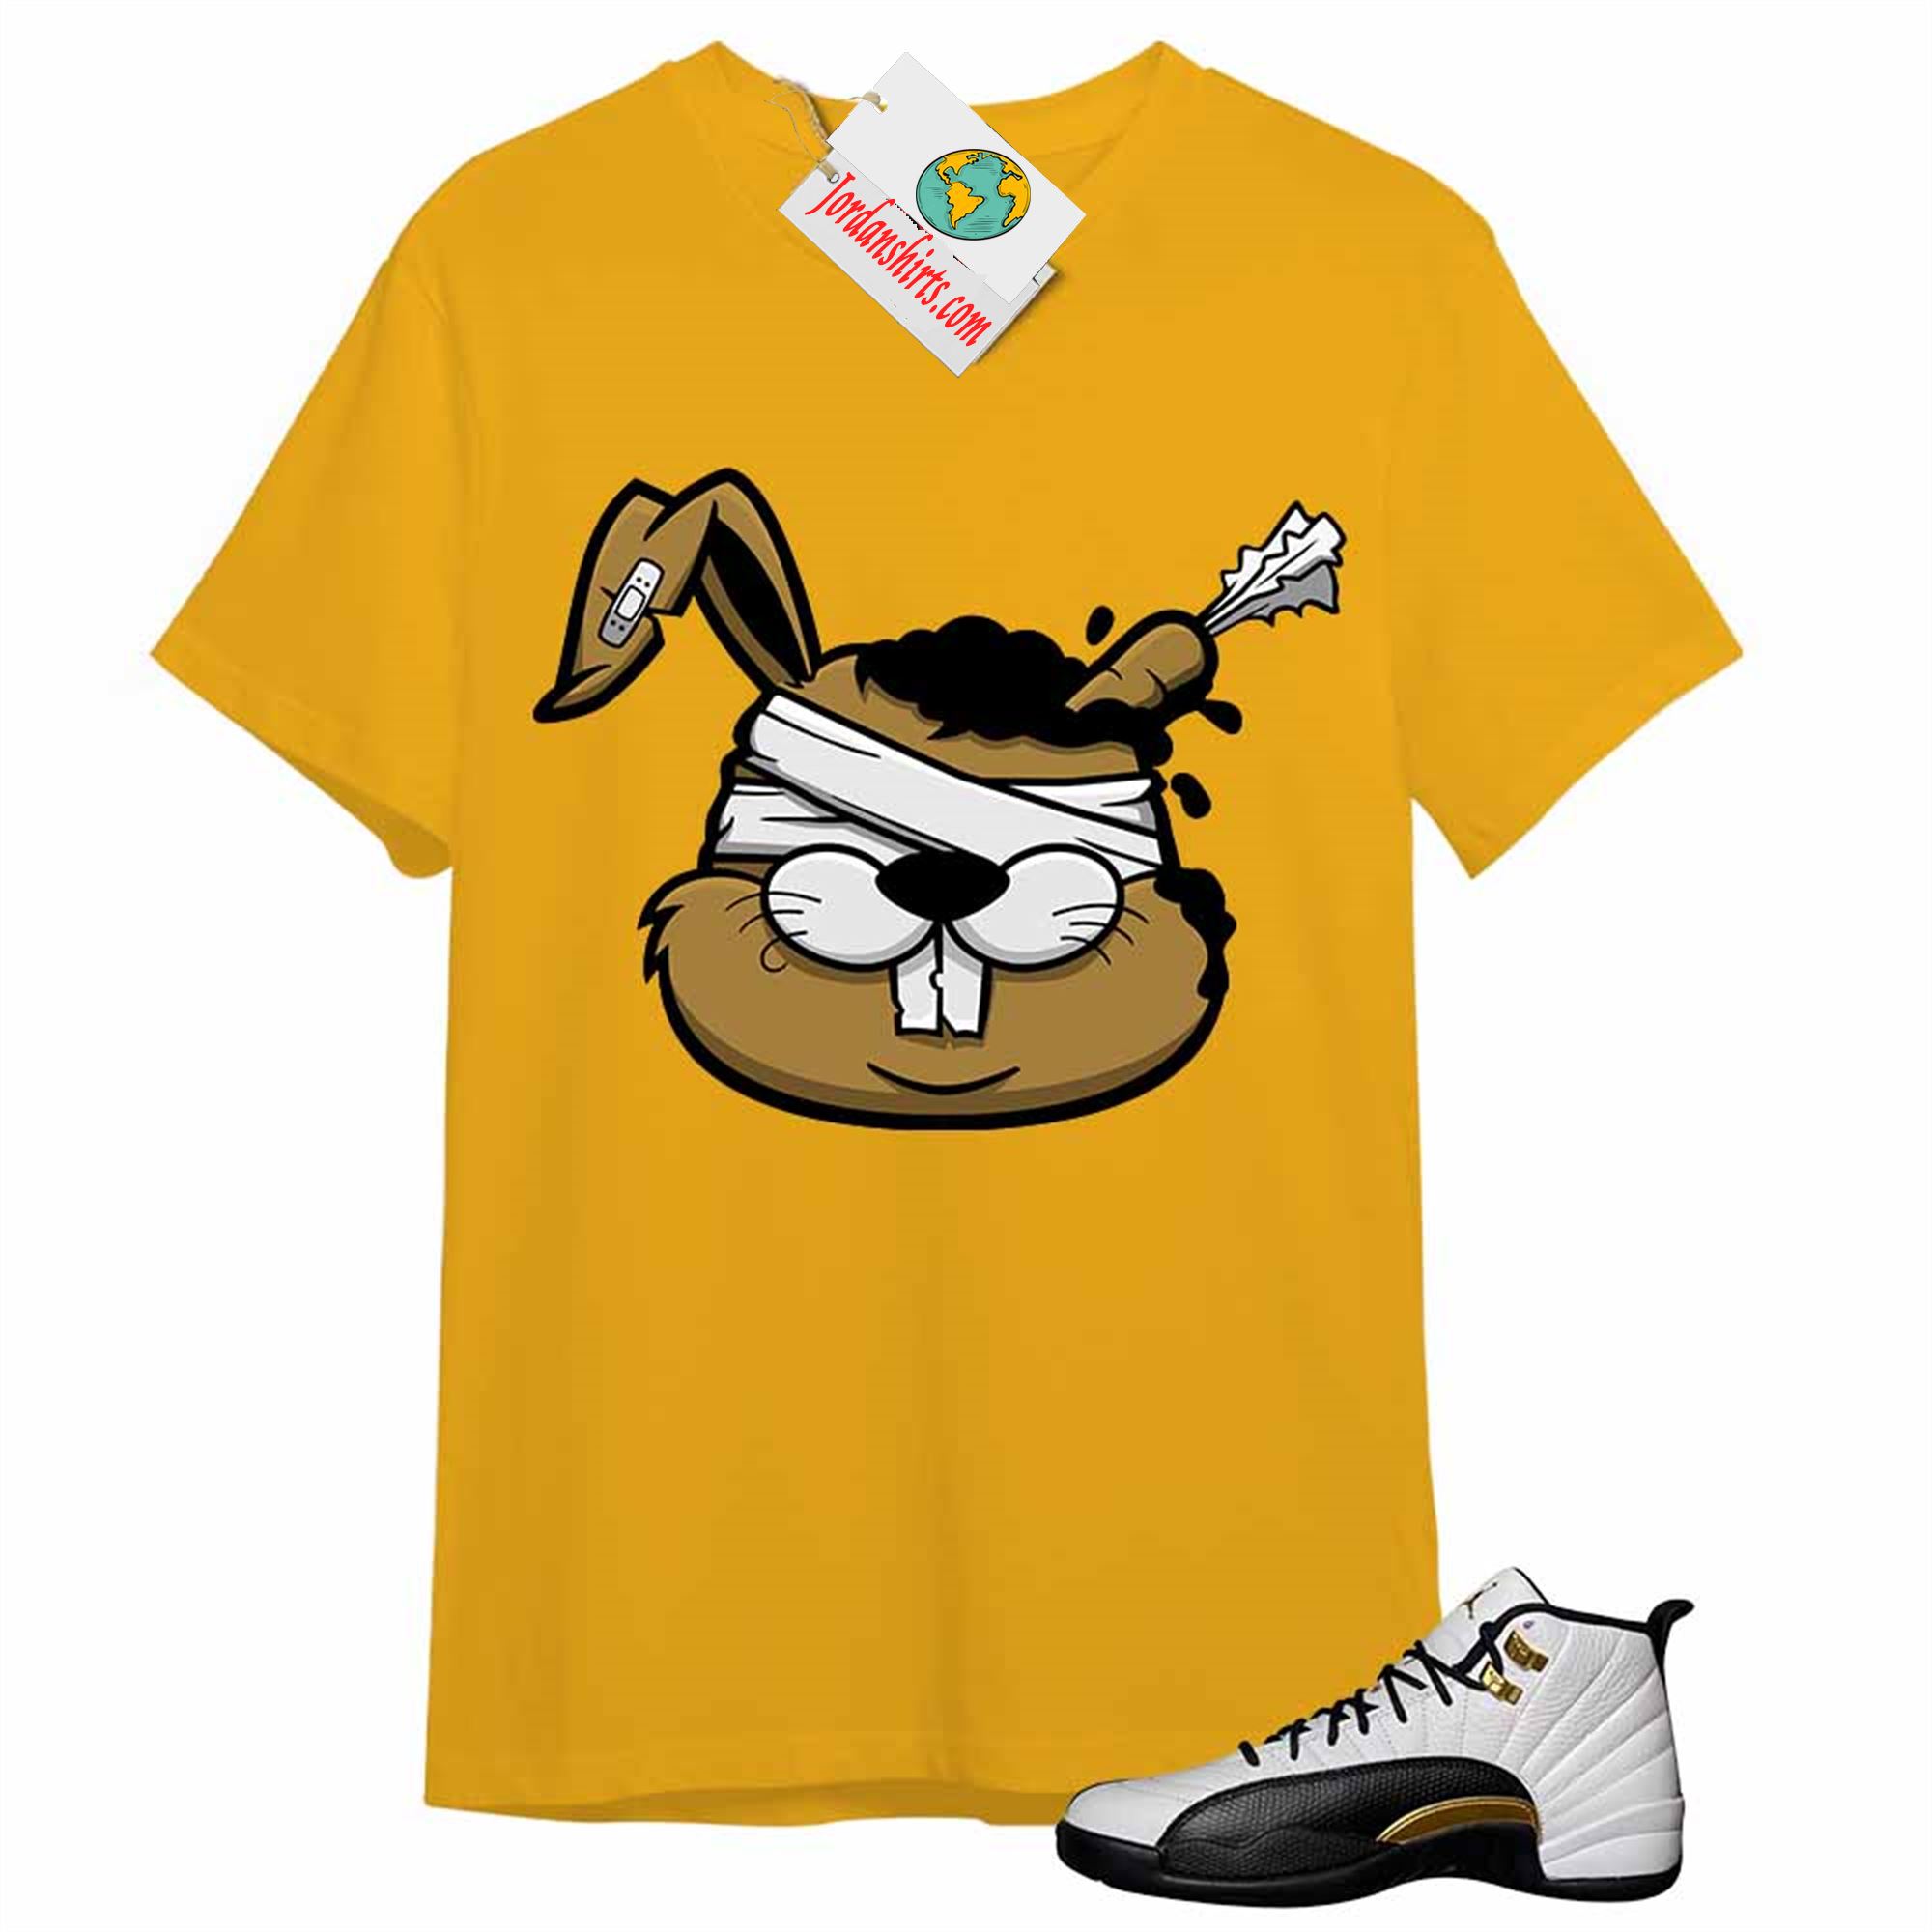 Jordan 12 Shirt, Zombie Bunny Gold T-shirt Air Jordan 12 Royalty 12s Plus Size Up To 5xl